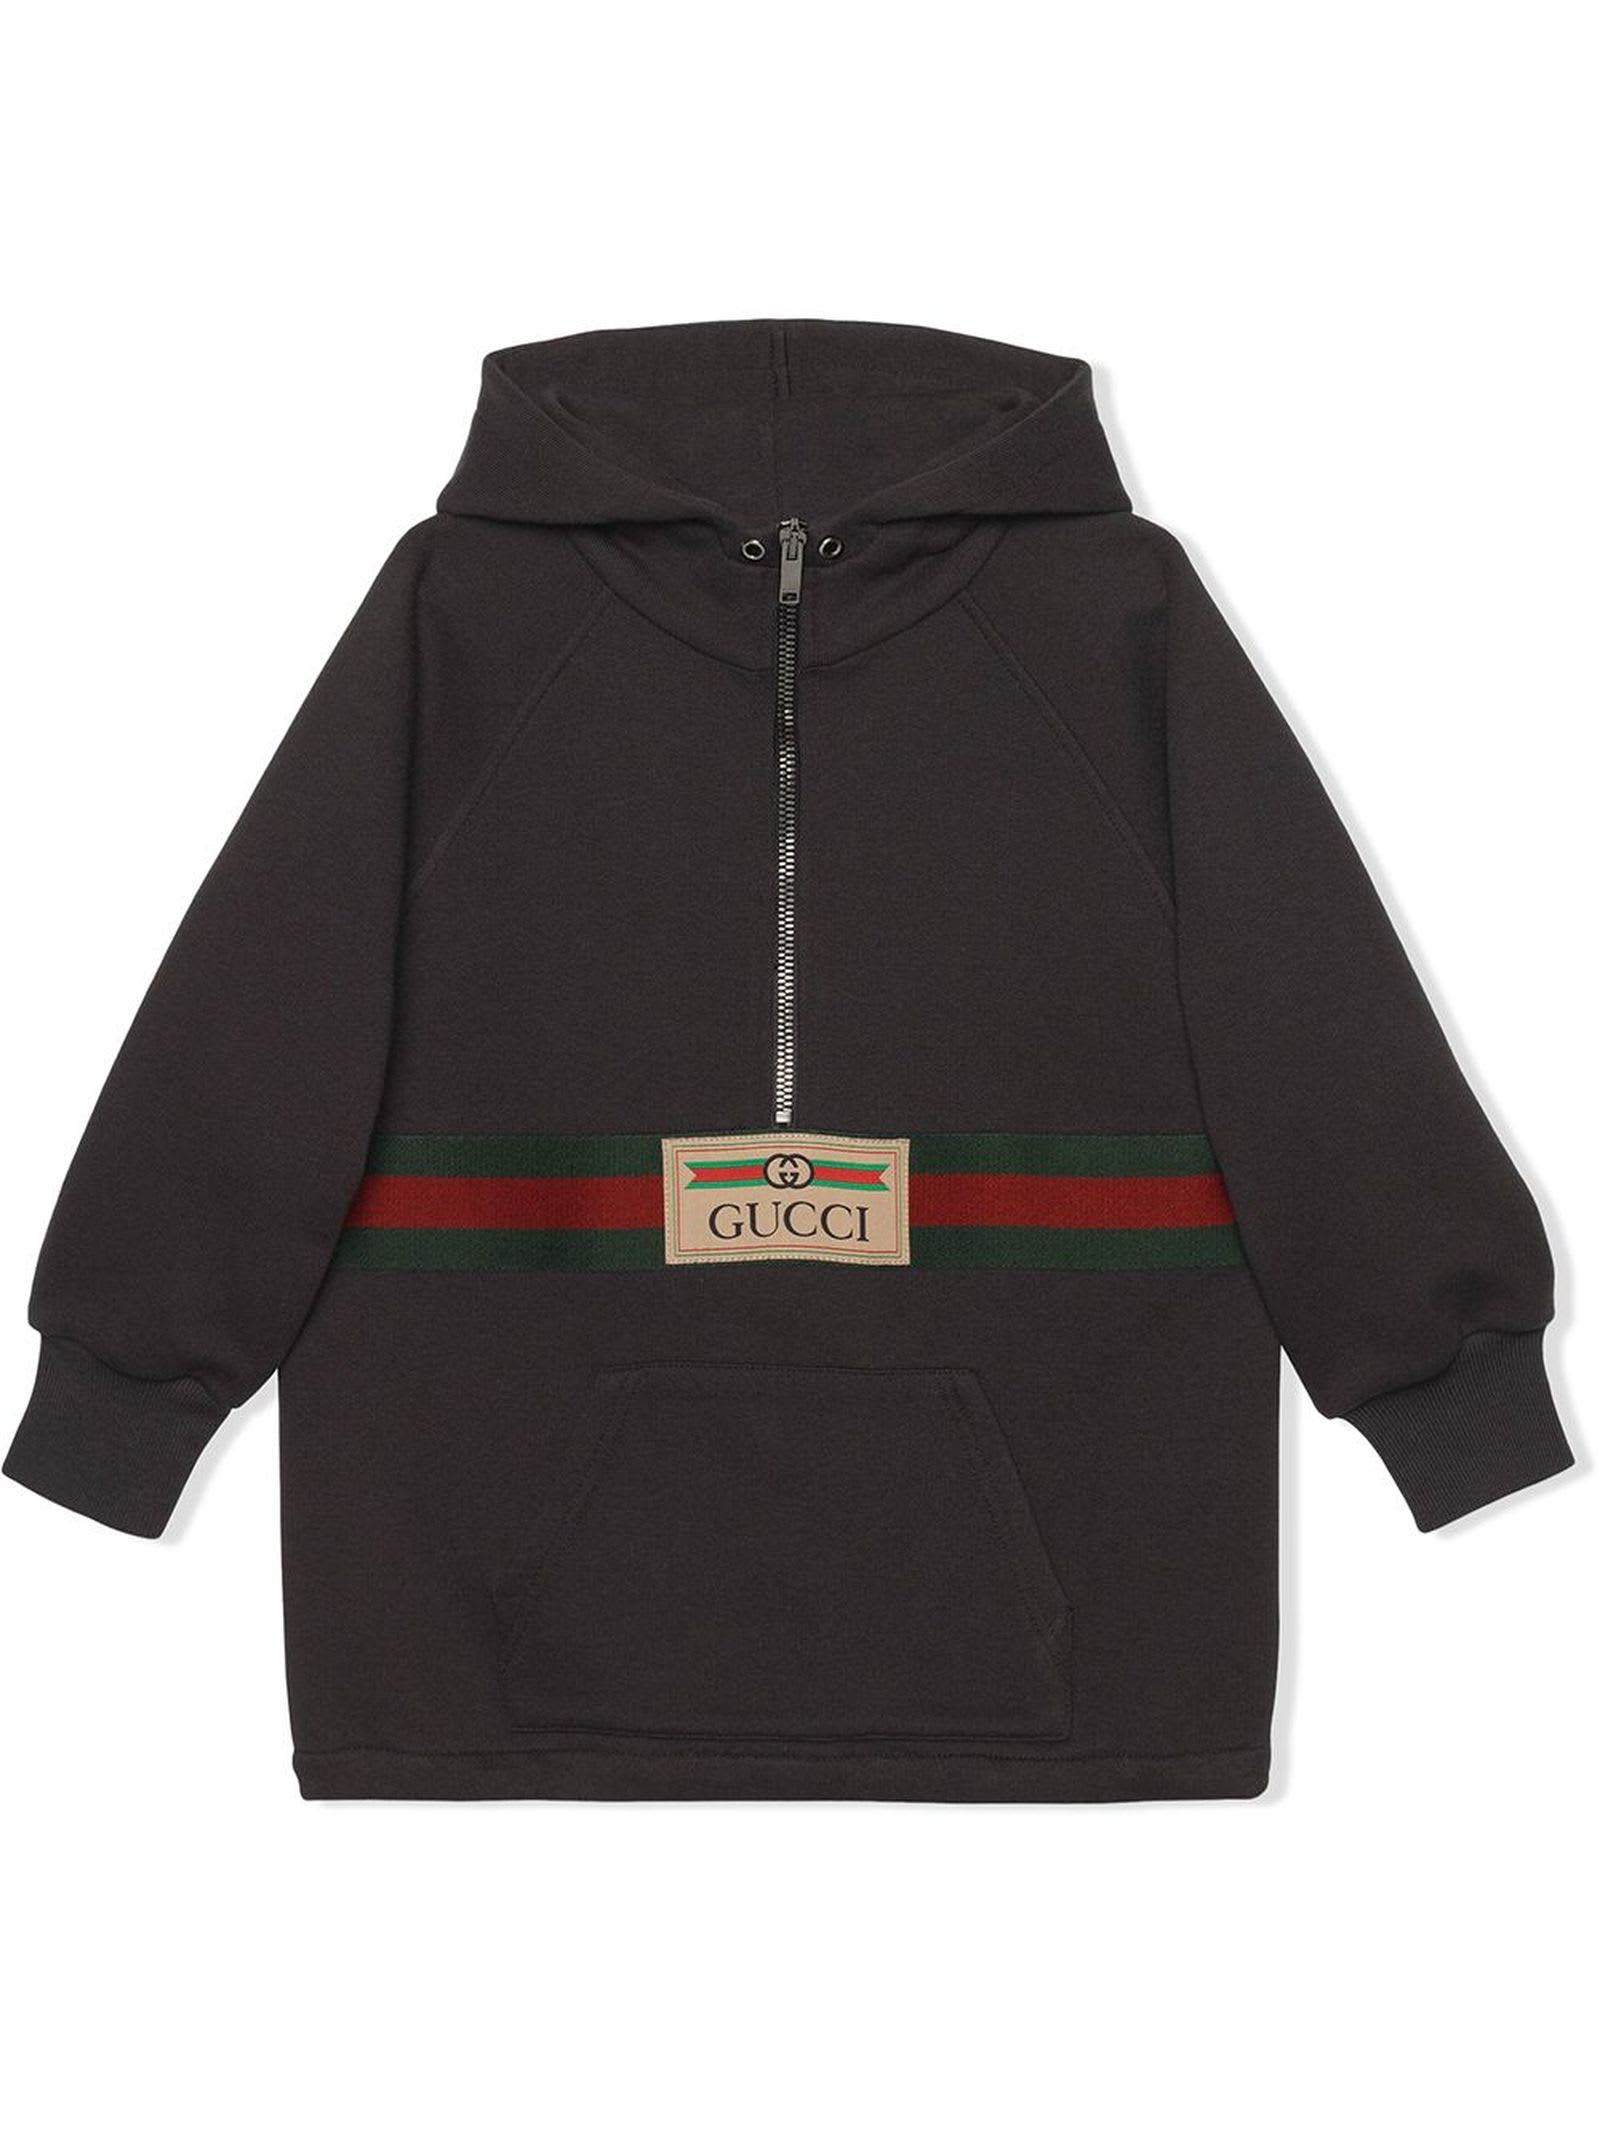 Gucci Dark Grey Felted Cotton Jersey Jacket